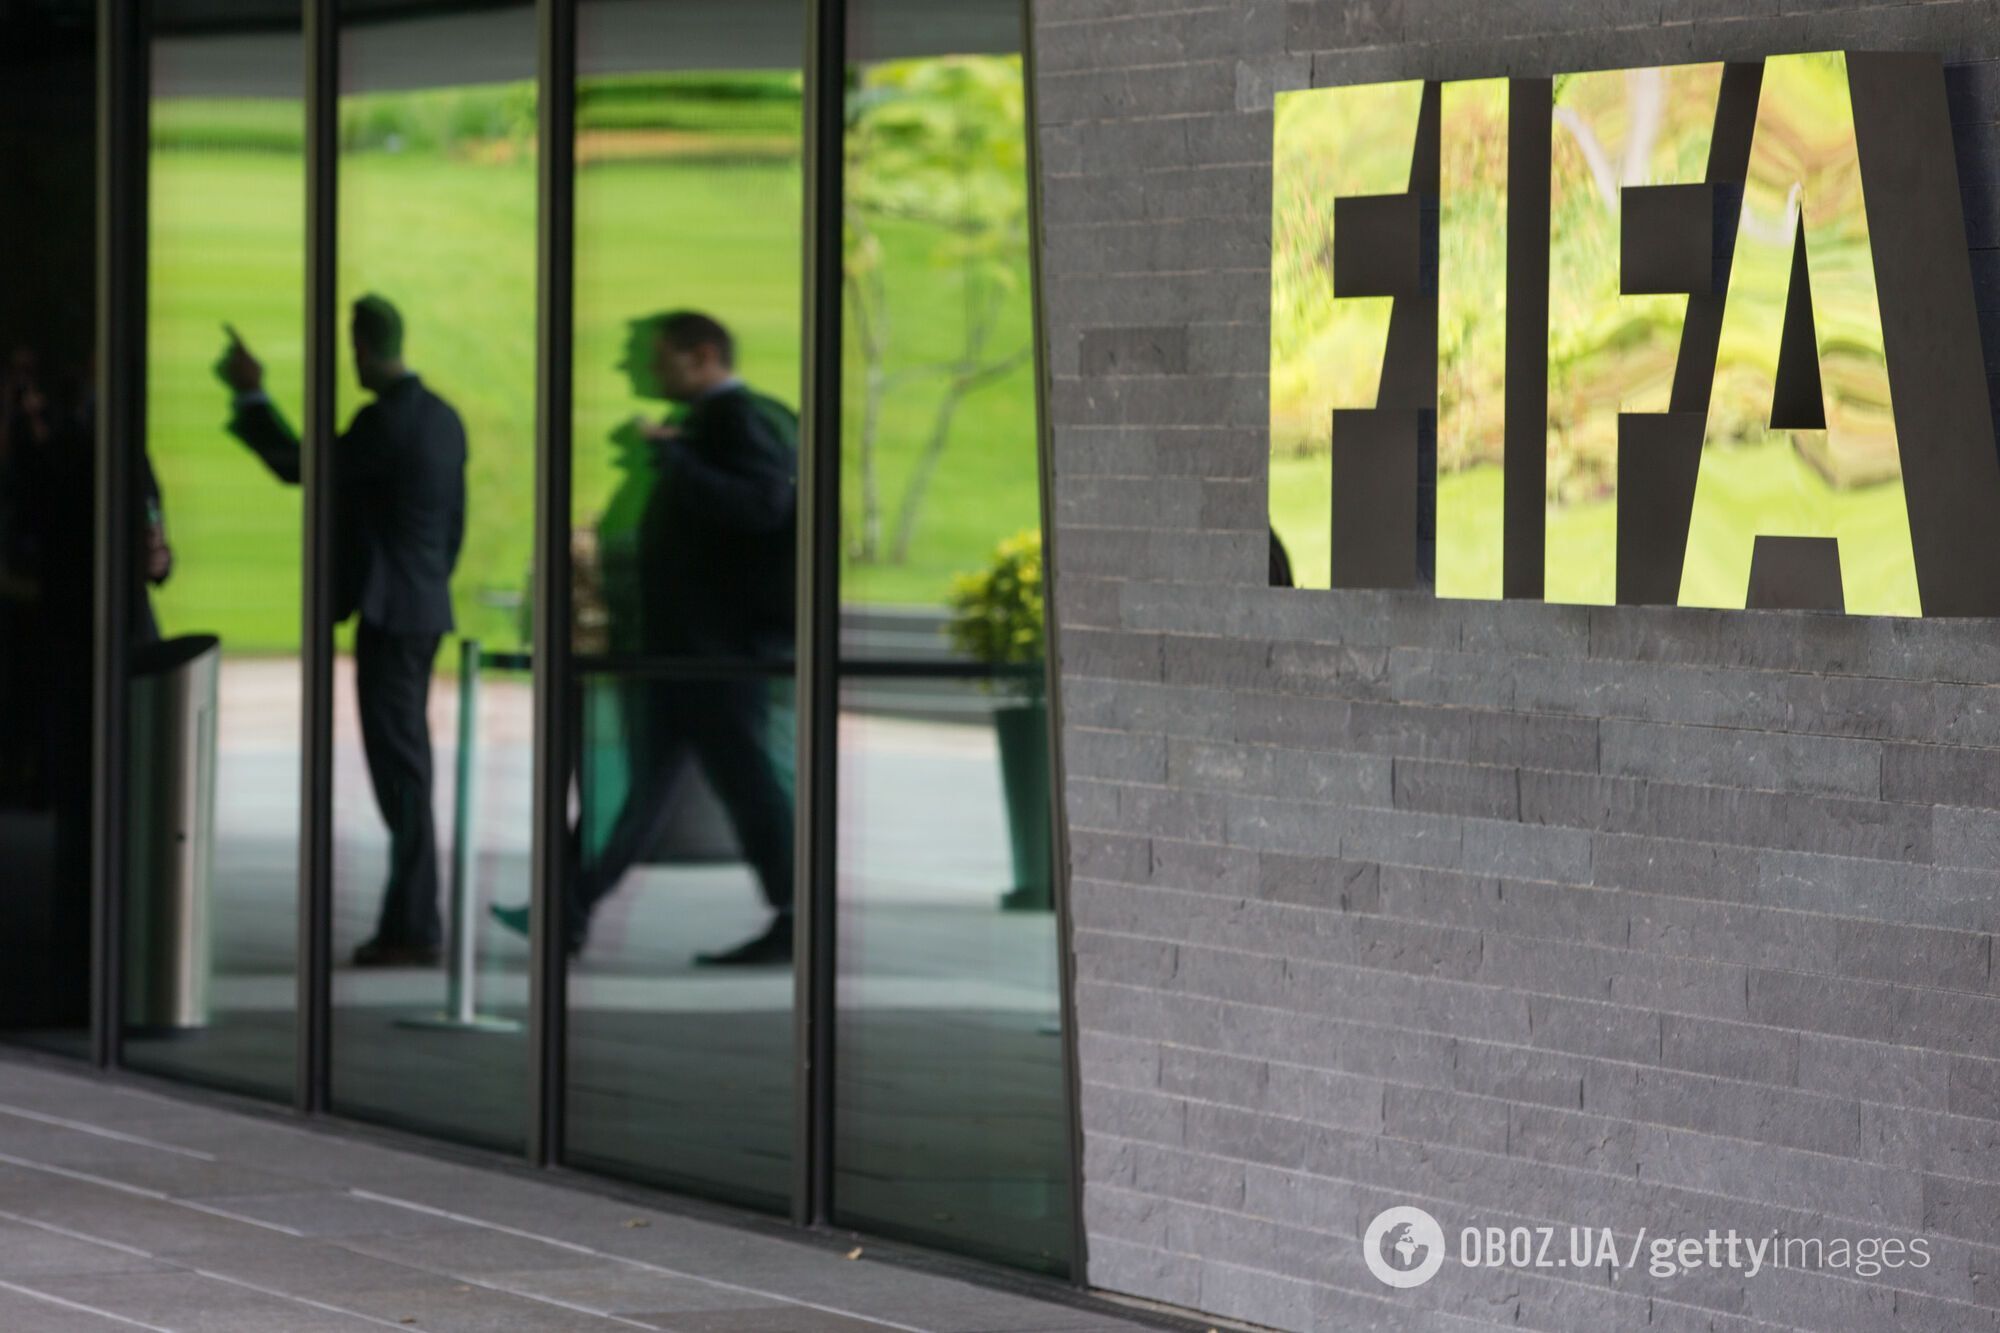 ФИФА собирается изменить правила чемпионата мира, взяв за образец Россию – СМИ